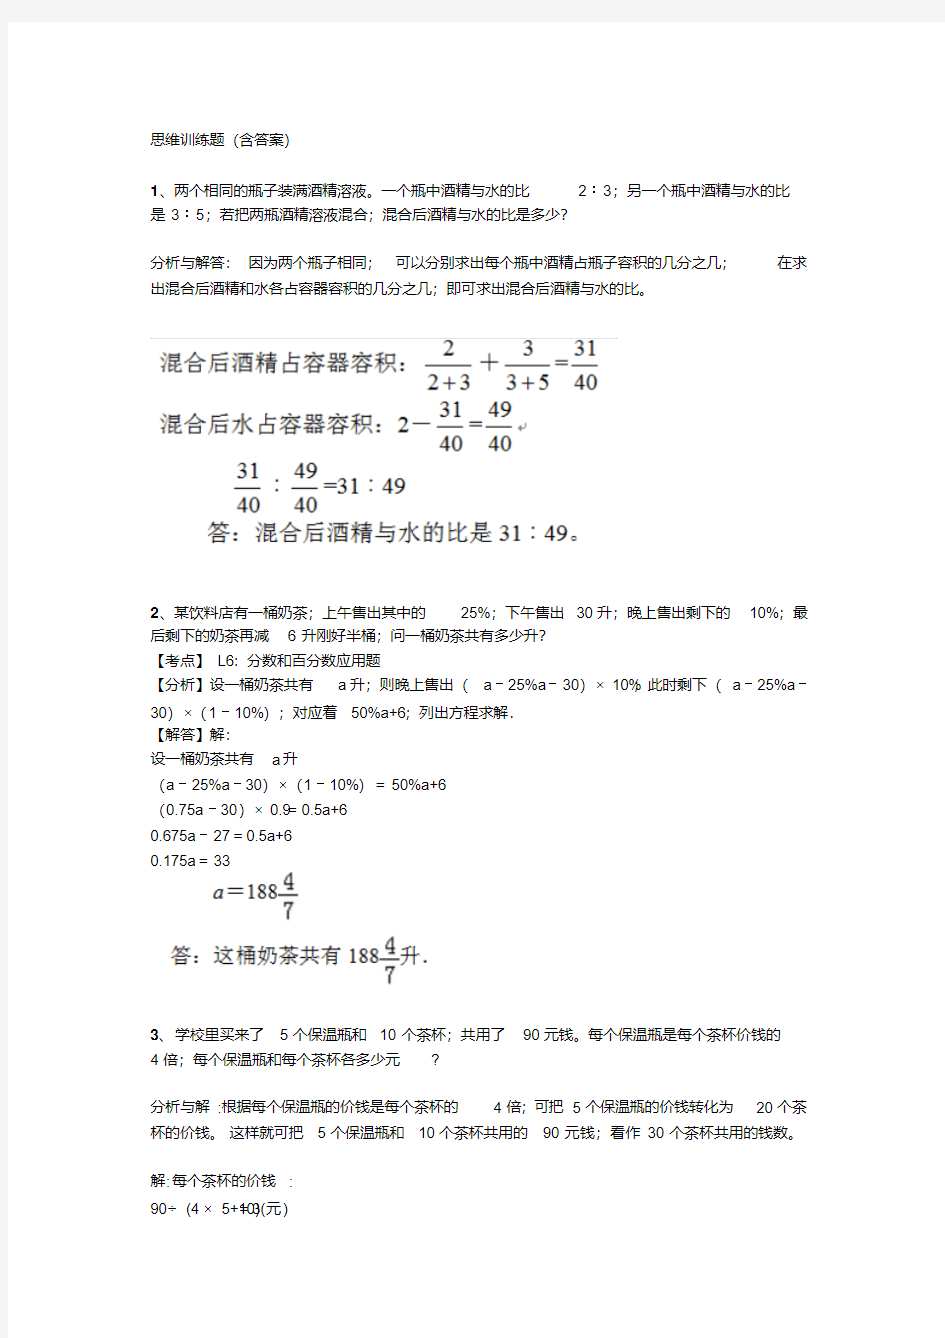 【小学数学】小学六年级数学思维训练题(含答案)